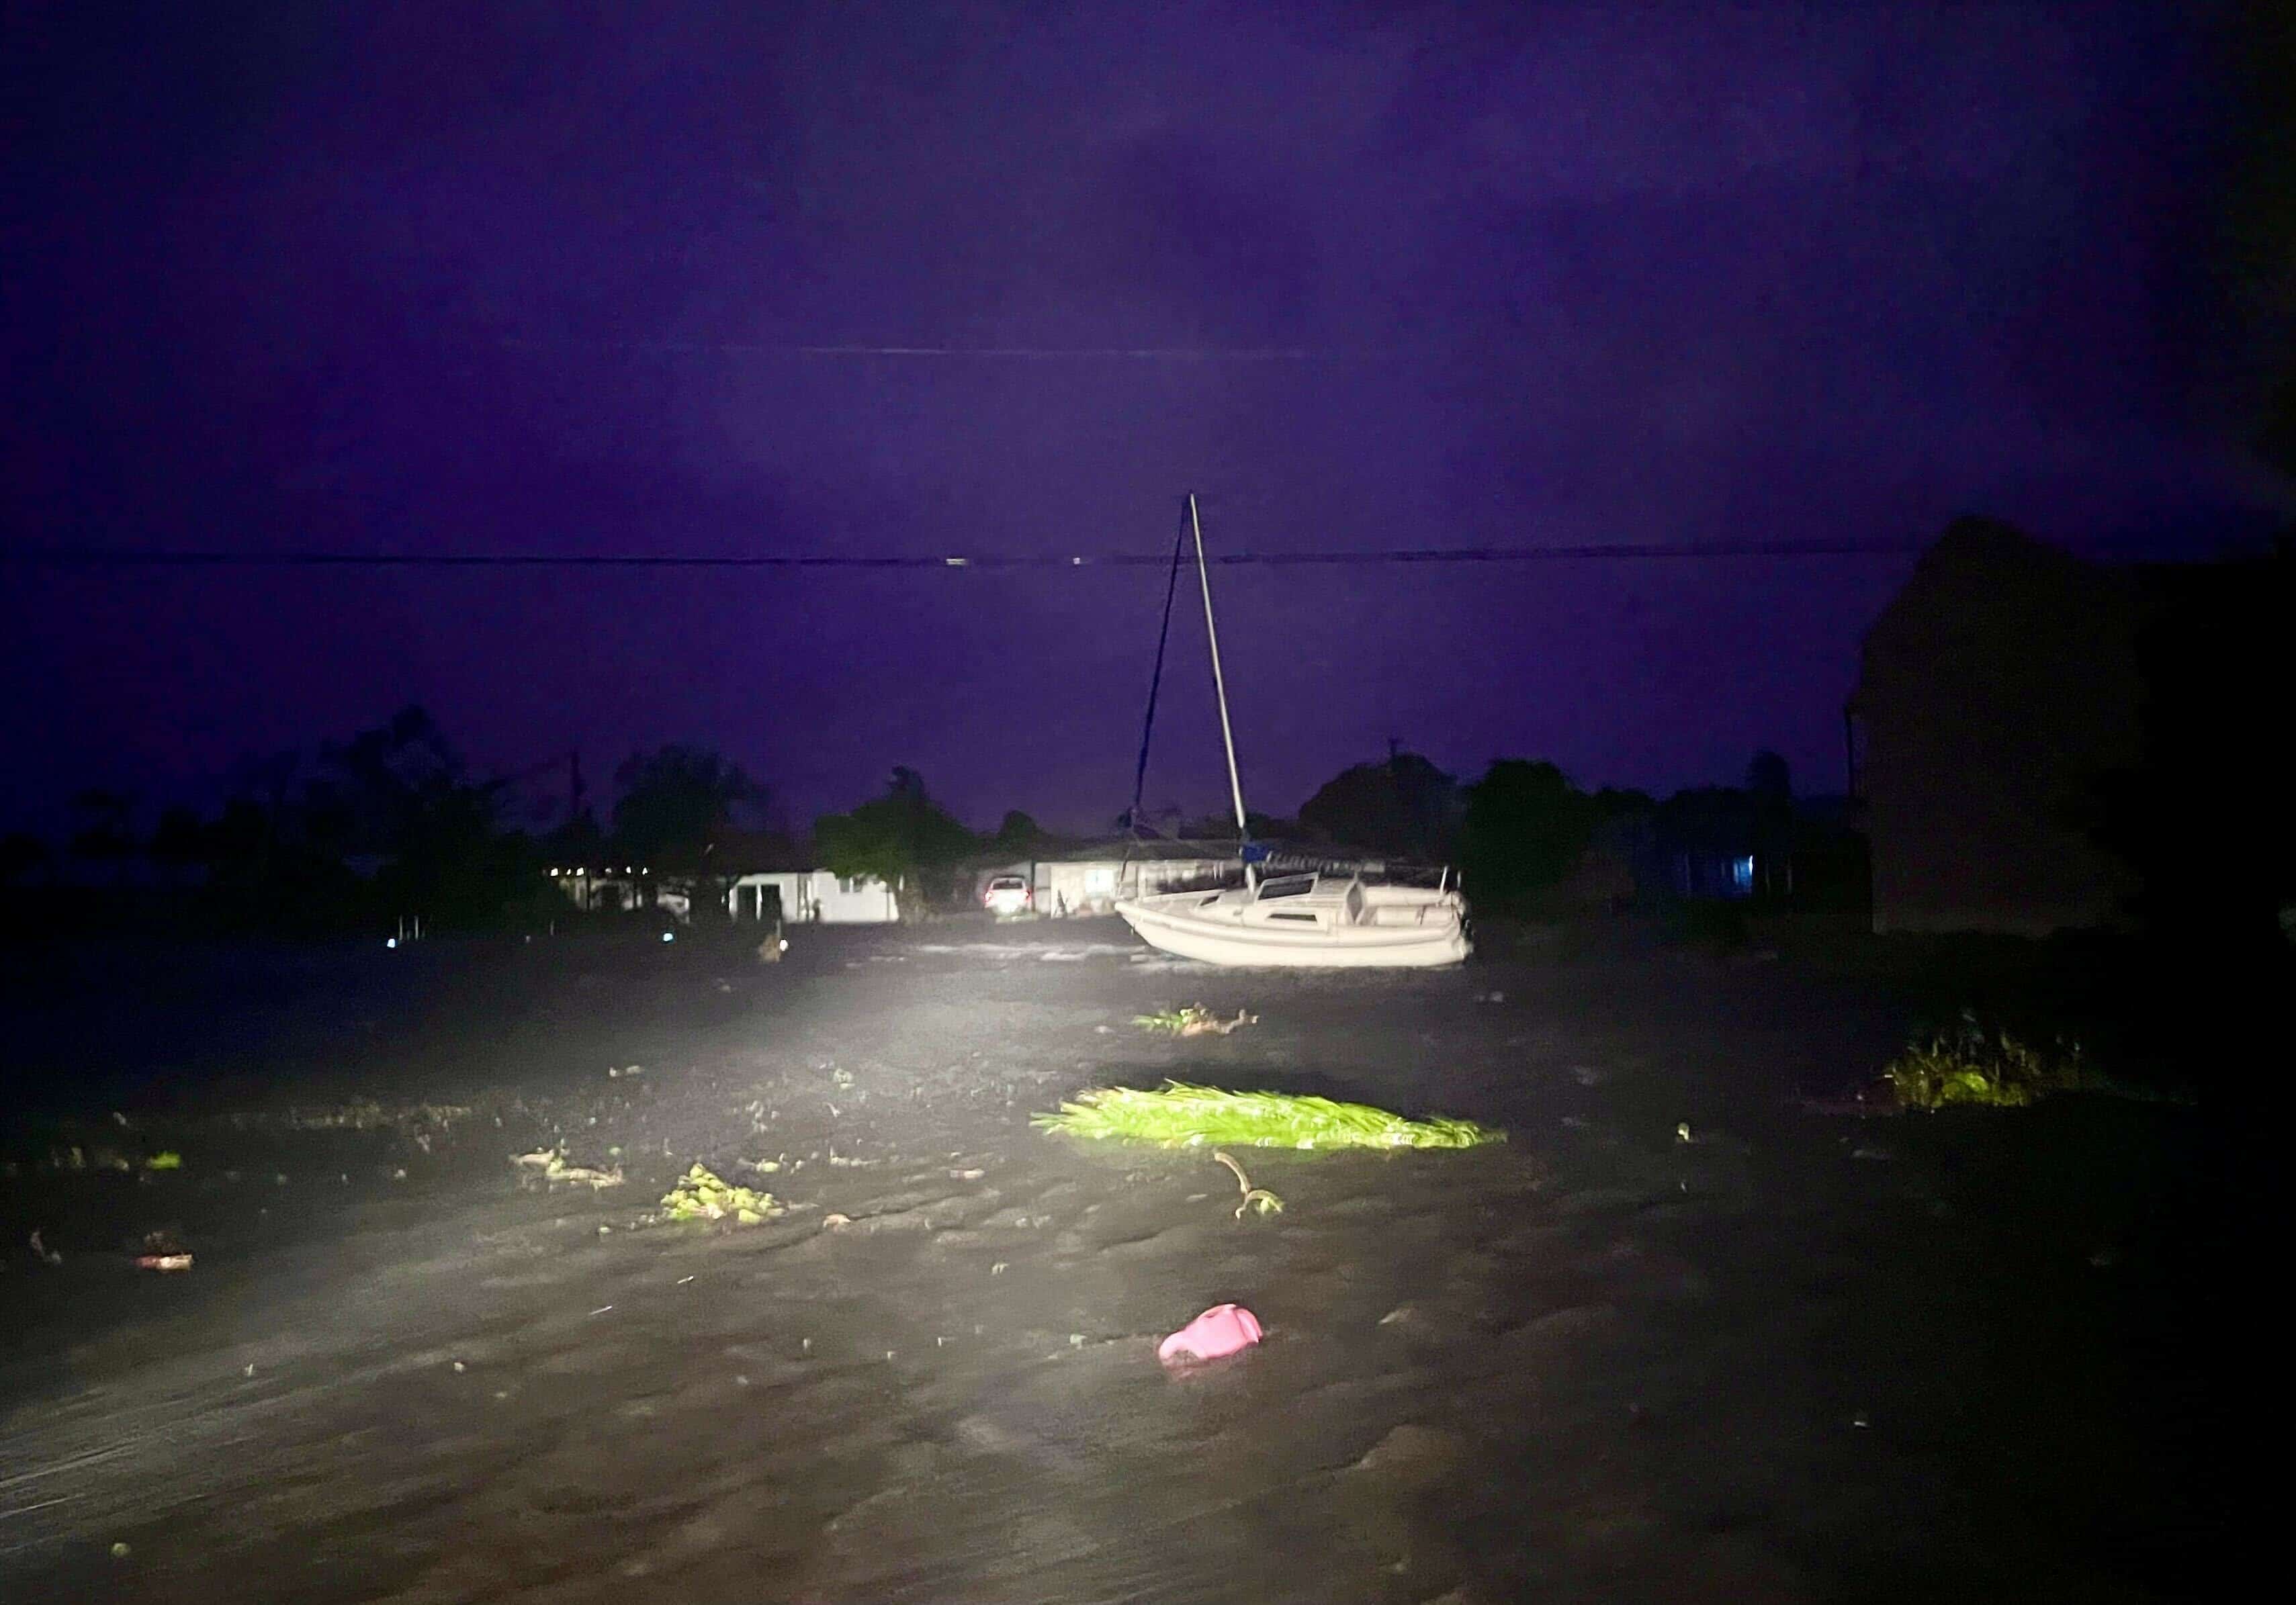 Un bote desplazado se encuentra junto a la carretera en la esquina sureste de Cape Coral el miércoles 28 de septiembre de 2022 por la noche, mientras los vientos del huracán Ian continúan azotando las calles empapadas.